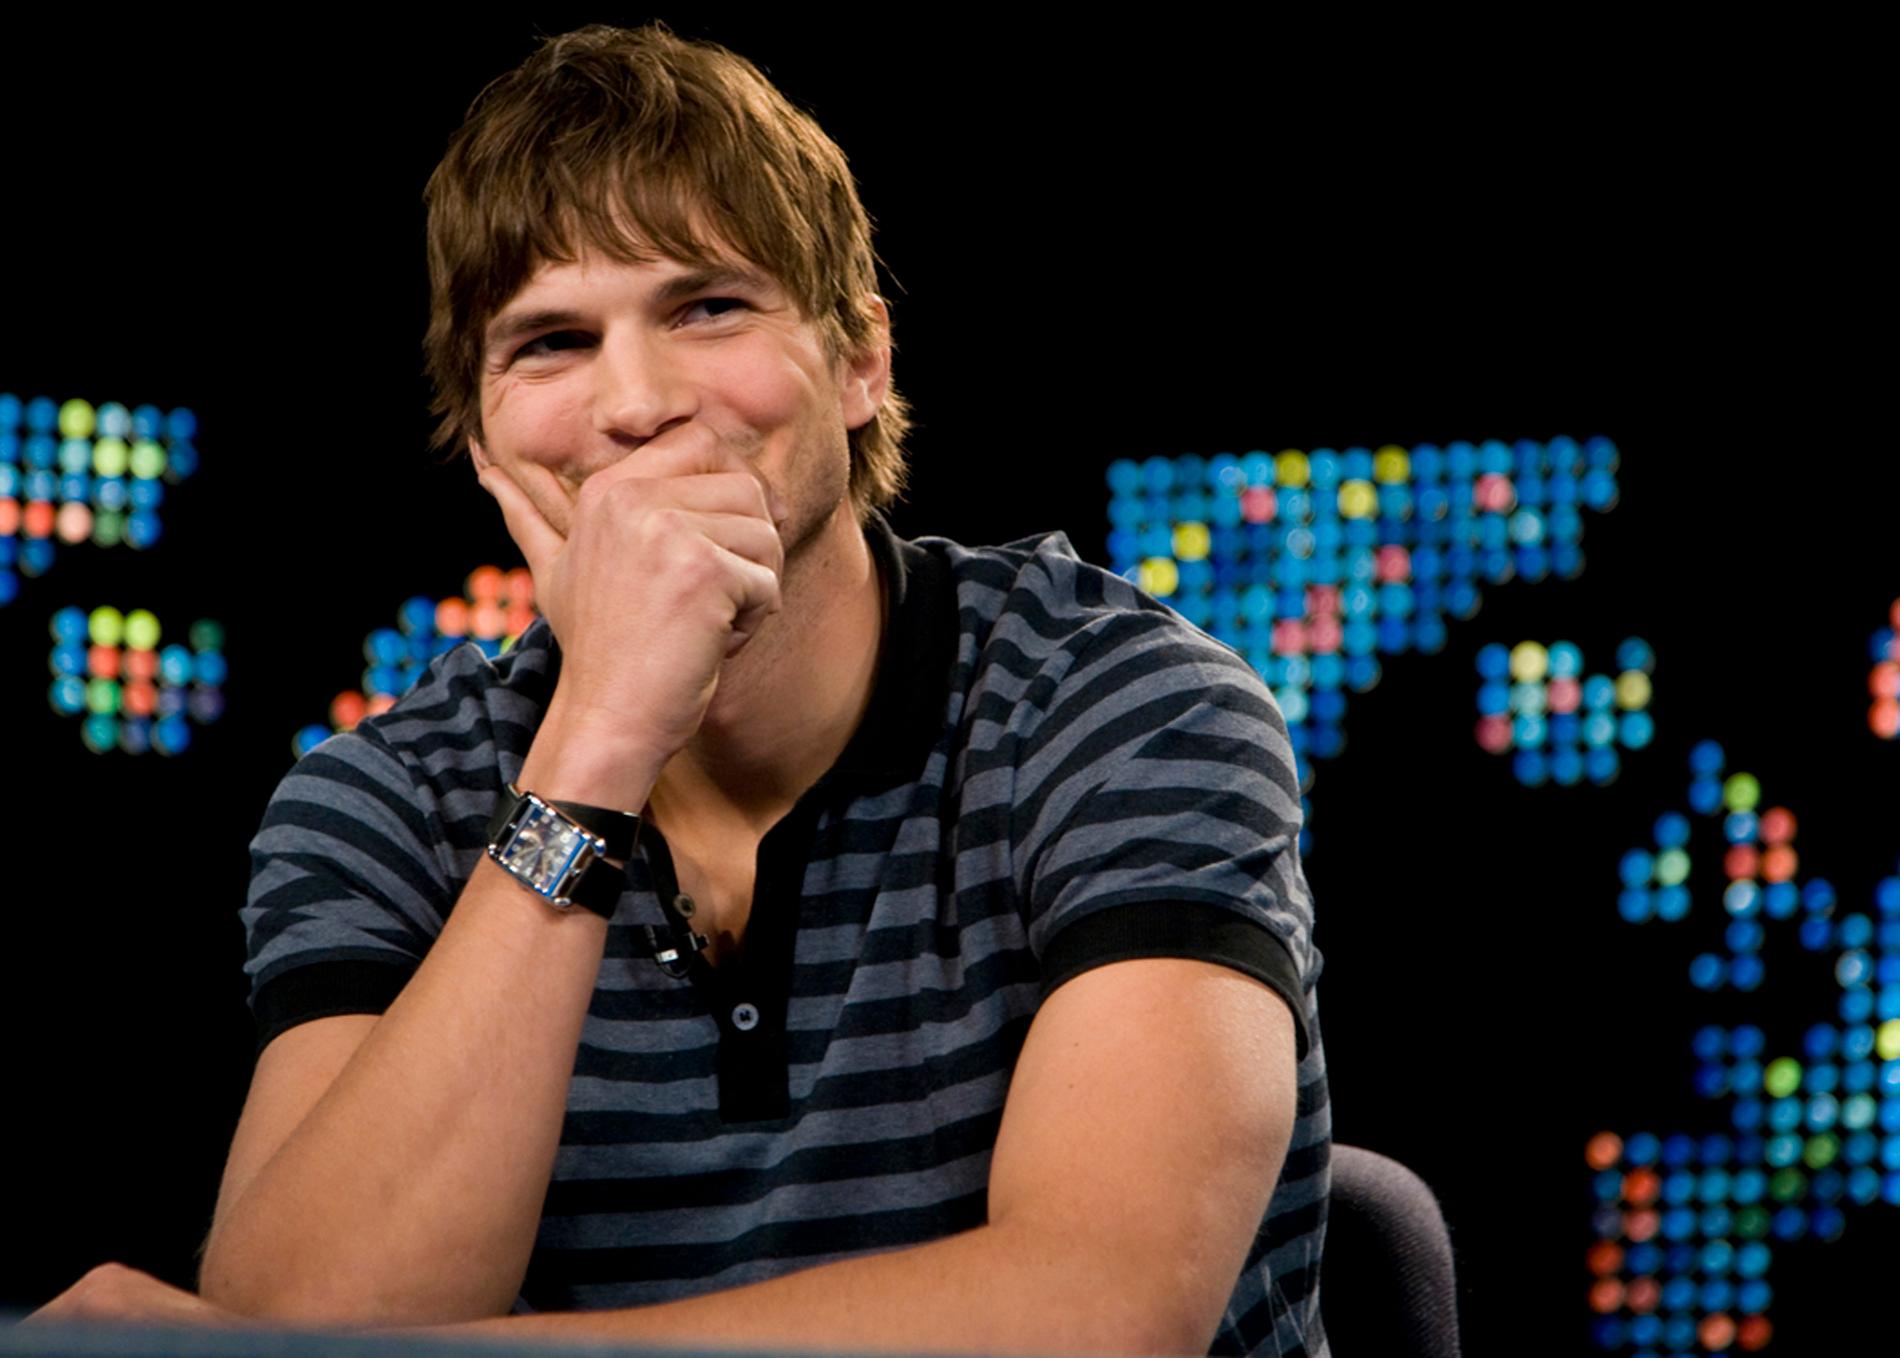 Väljer Ashton Kutcher att tacka ja till att efterträda Charlie Sheen kan han skratta sig lycklig. Sheen var under förra året den högst avlönade tv-skådespelaren i USA med 11 miljoner kronor per avsnitt.